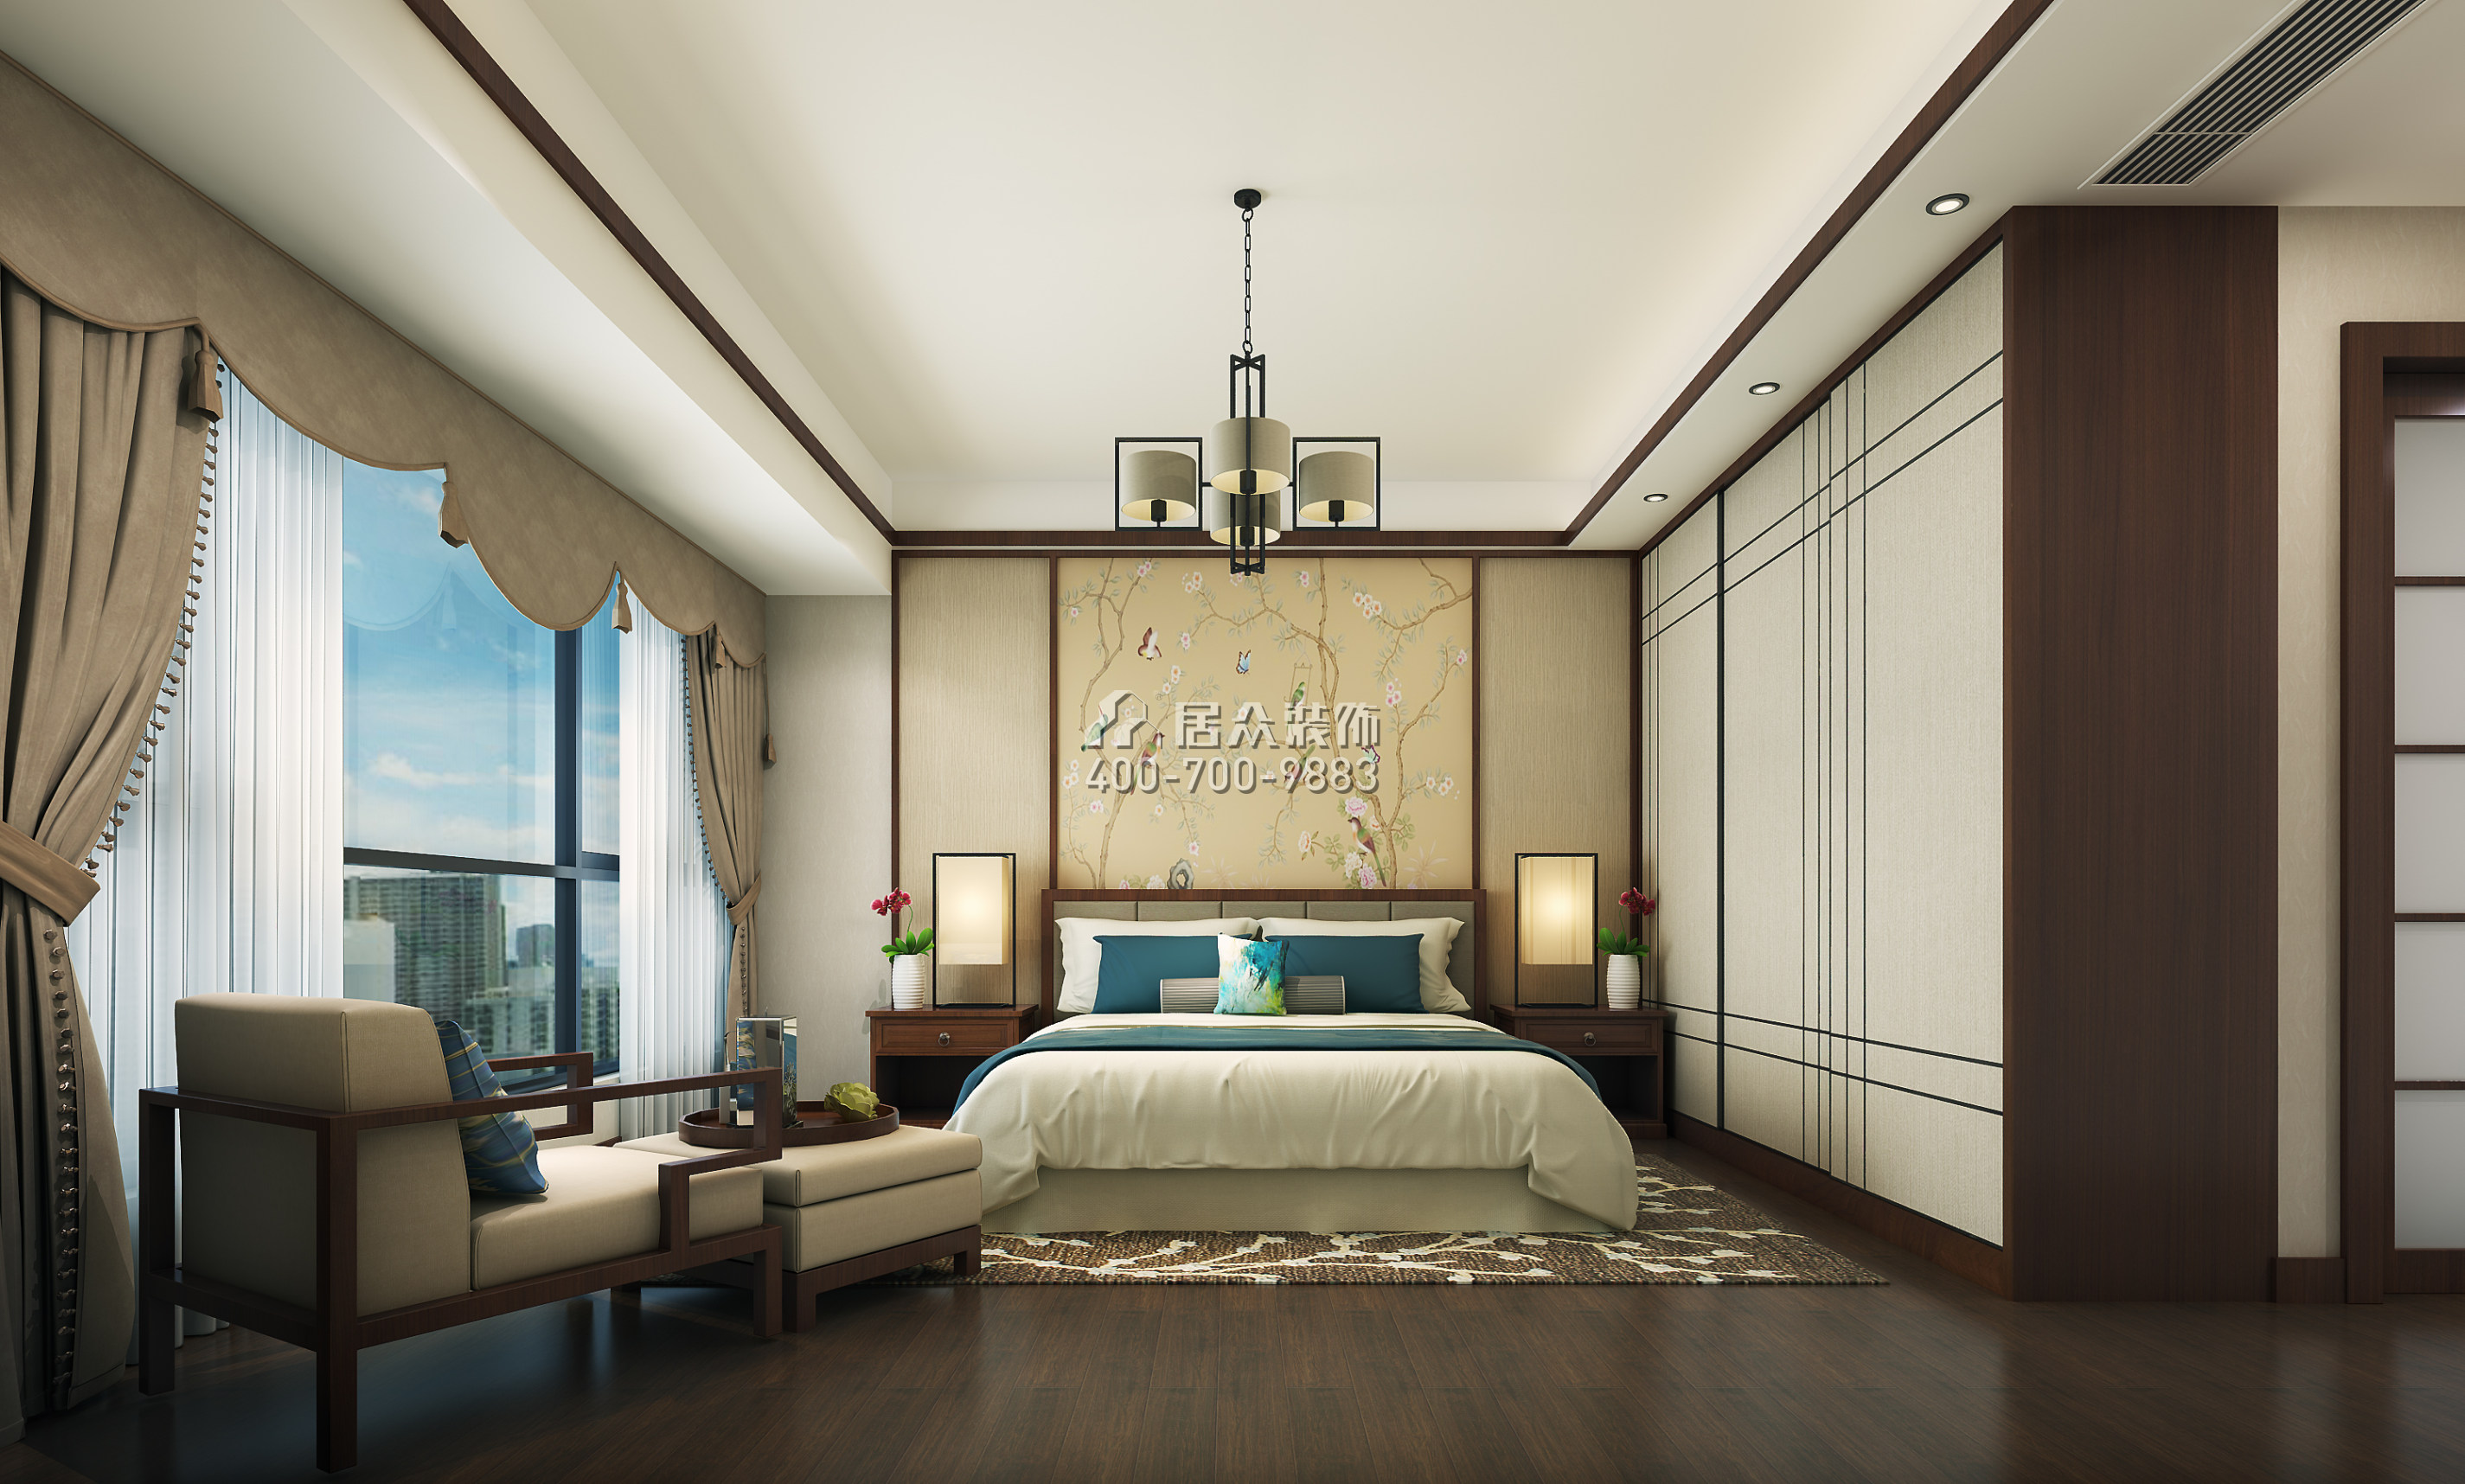 珑城半山215平方米中式风格平层户型卧室装修效果图